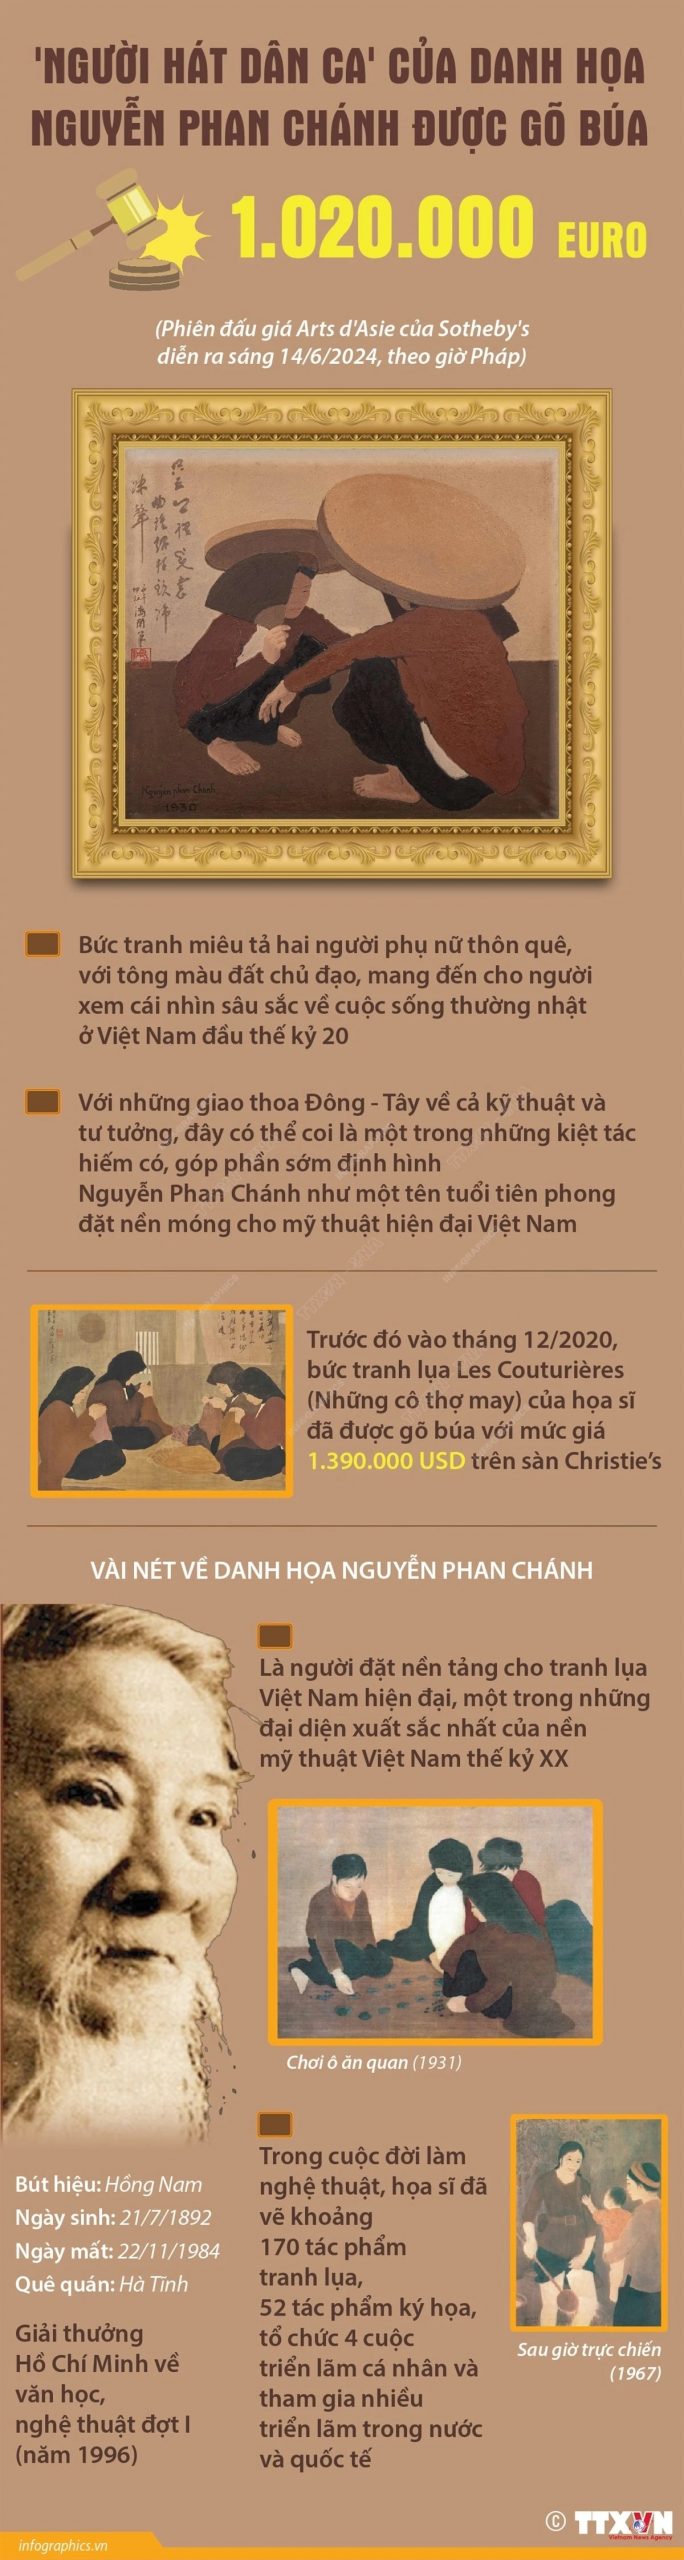 Nguoi hat dan ca cua hoa sy Nguyen Phan Chanh min scaled - 'Người hát dân ca' của họa sỹ Nguyễn Phan Chánh có giá bán hơn 1 triệu euro